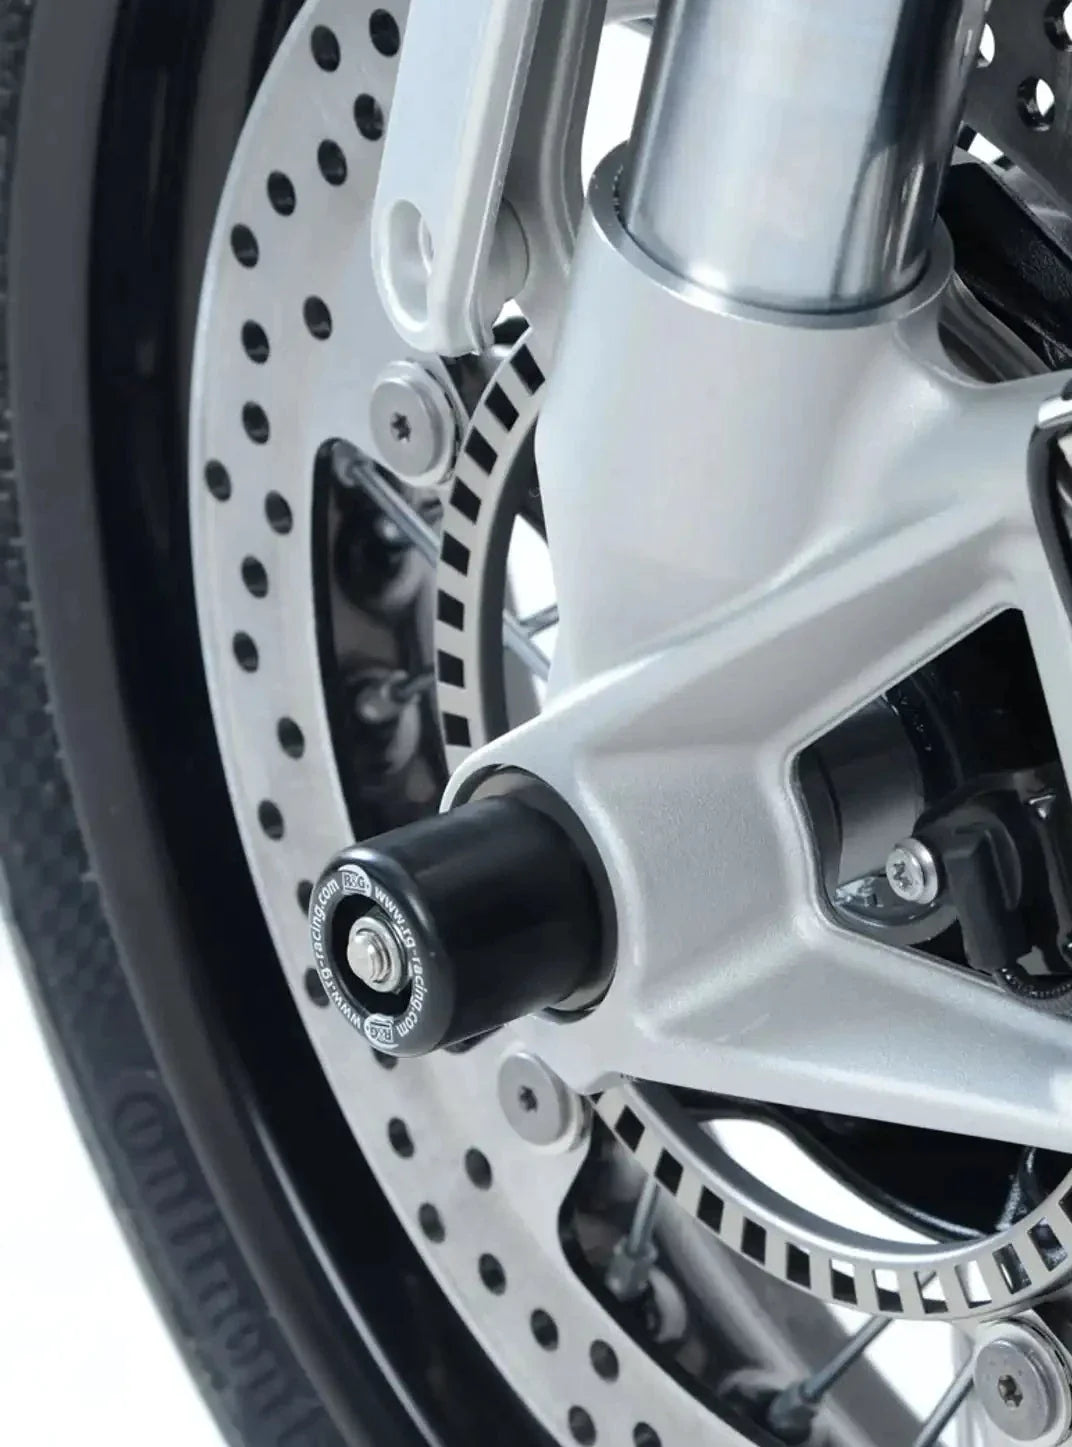 FP0201 - R&G RACING BMW R nineT (17/18) Front Wheel Sliders